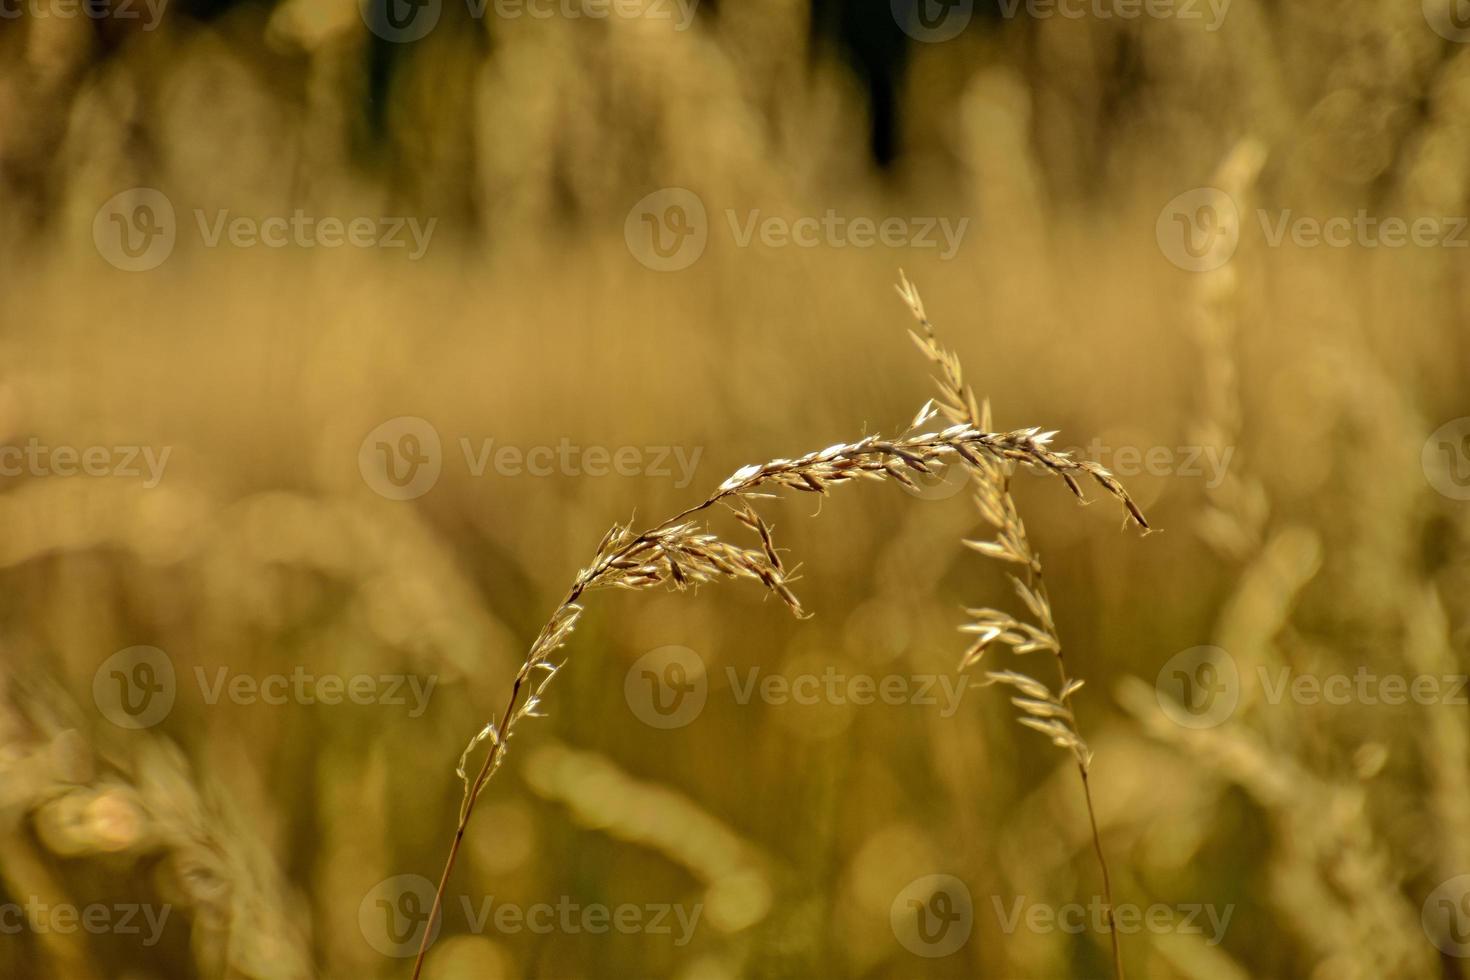 d'oro estate selvaggio erba nel il eterno caldo dolce sole foto